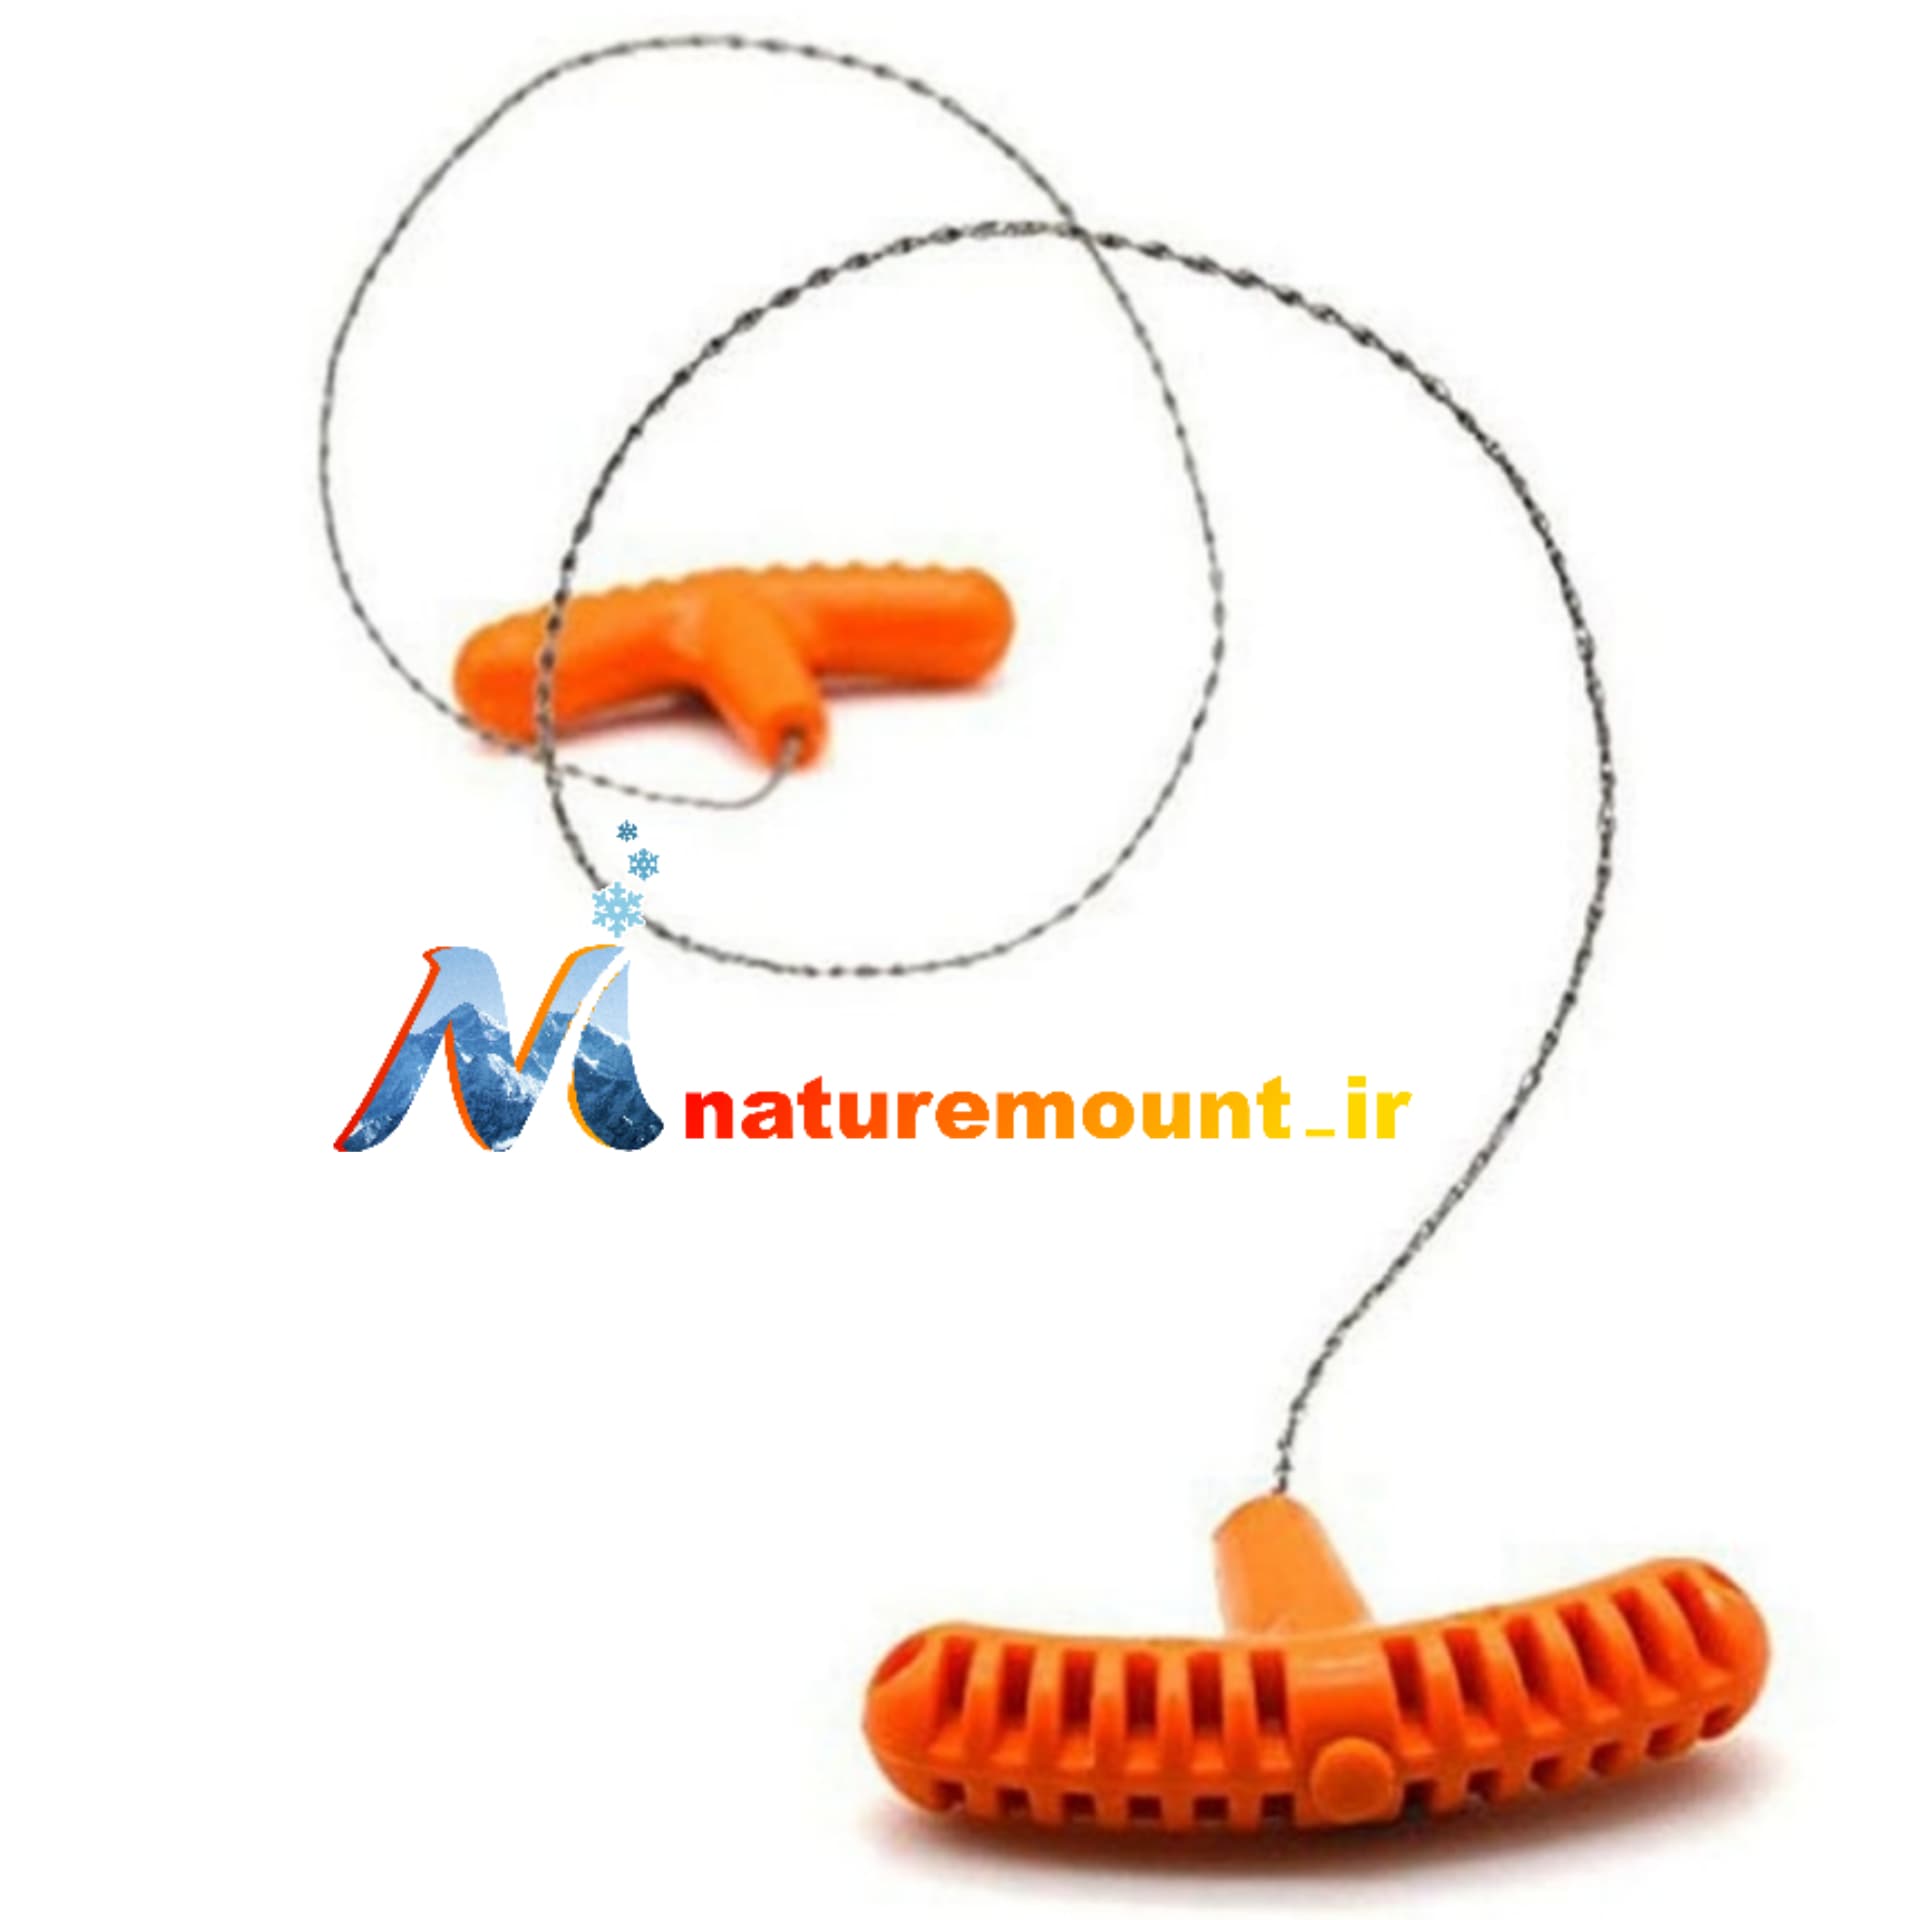 اره سیمی دسته دار-naturemount.ir